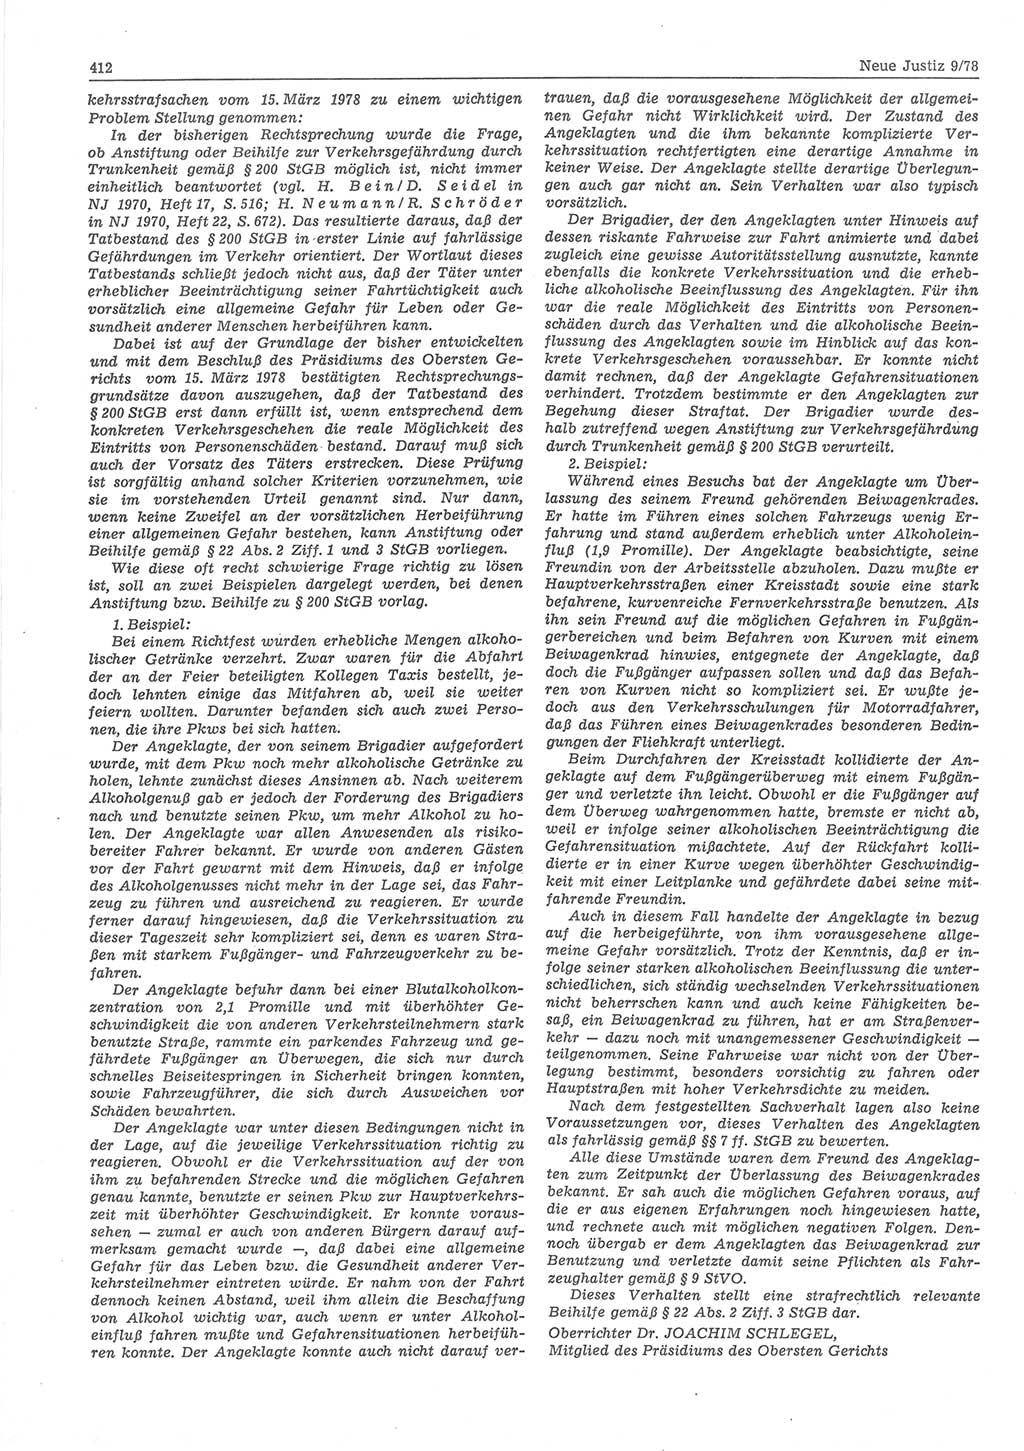 Neue Justiz (NJ), Zeitschrift für sozialistisches Recht und Gesetzlichkeit [Deutsche Demokratische Republik (DDR)], 32. Jahrgang 1978, Seite 412 (NJ DDR 1978, S. 412)